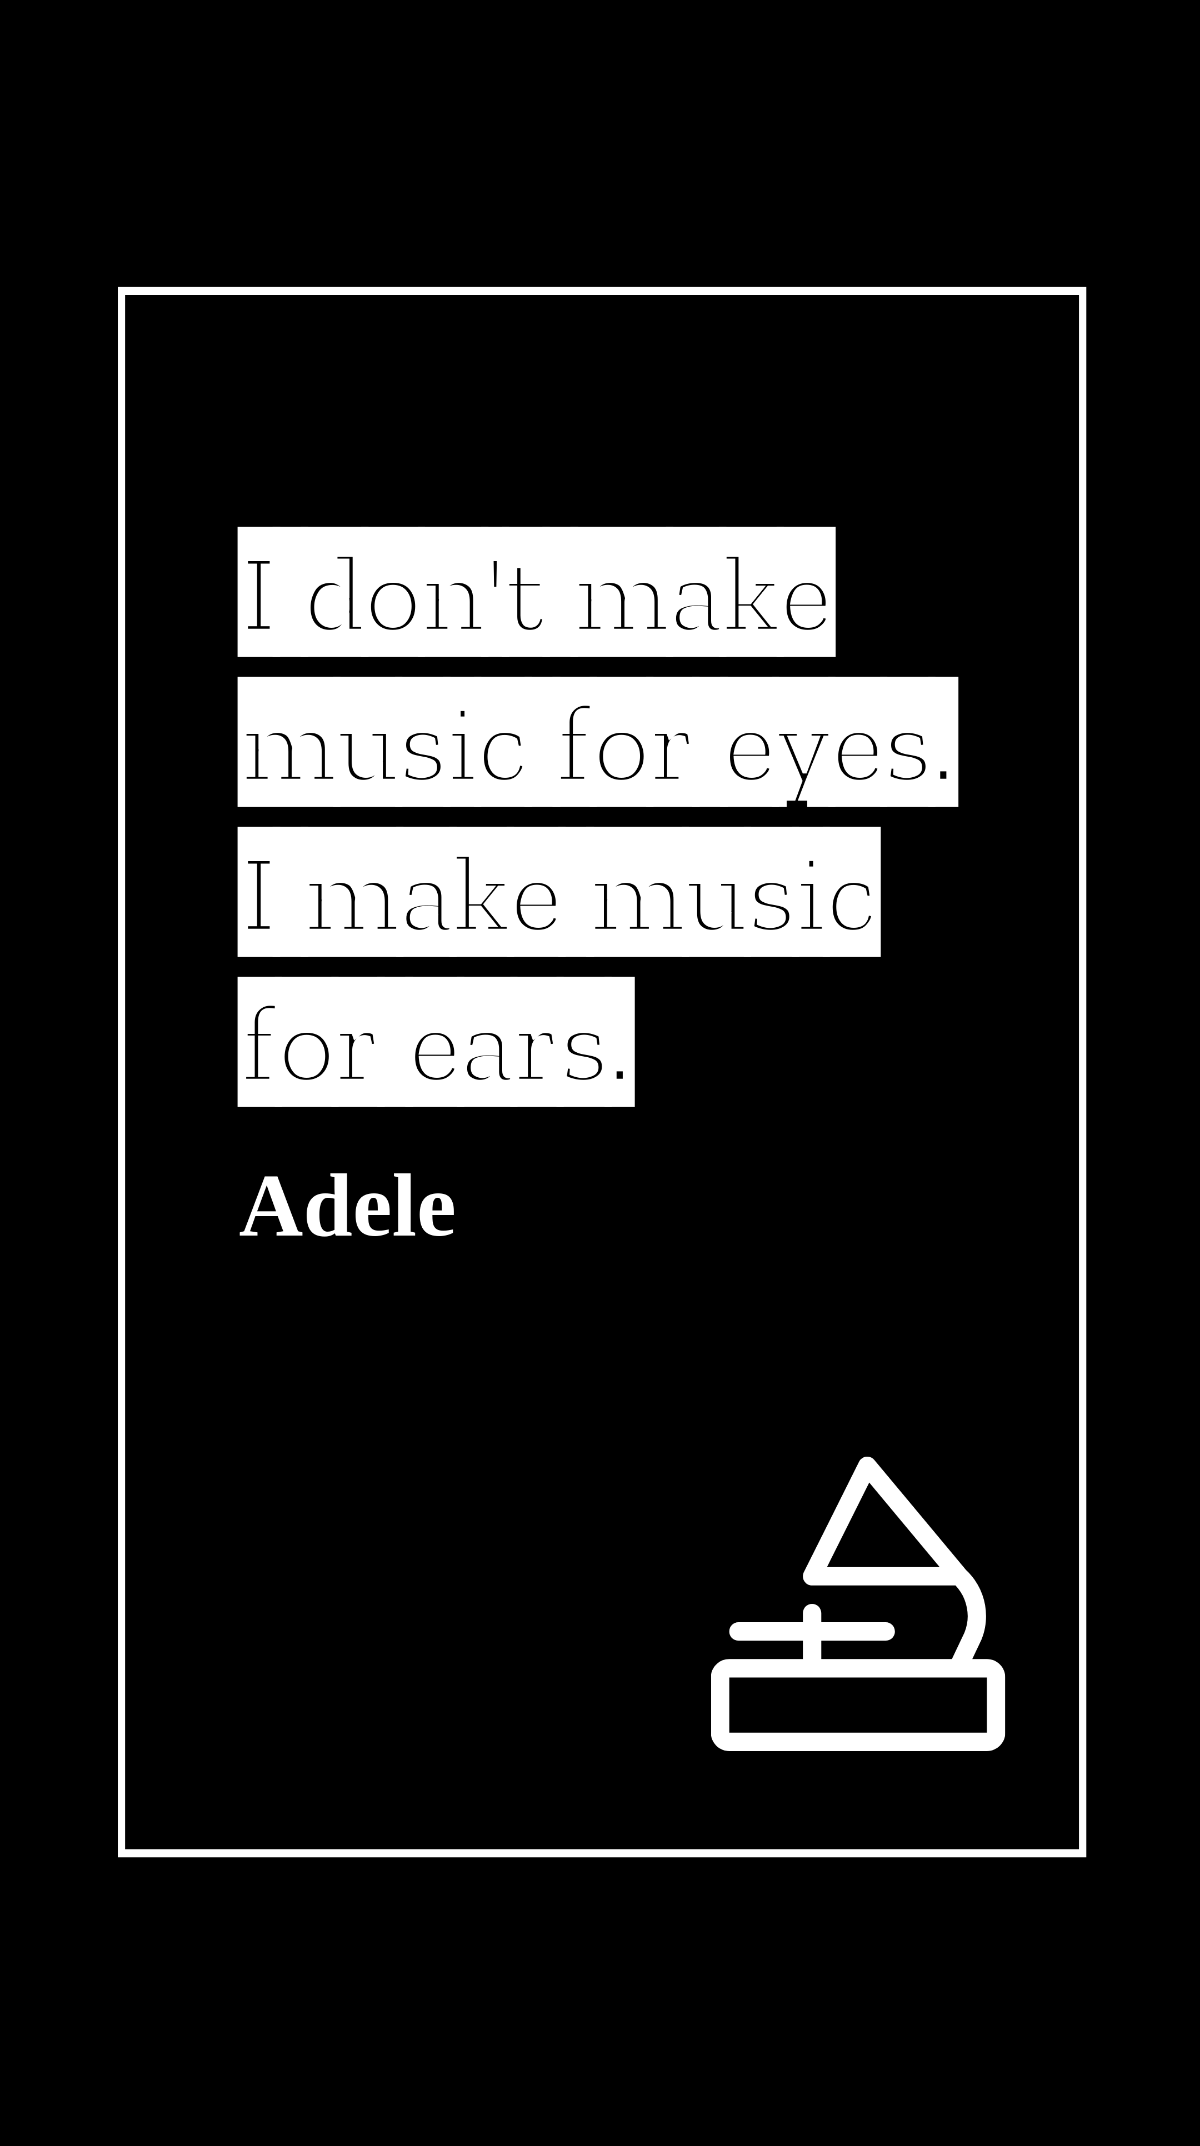 Adele - I don't make music for eyes. I make music for ears.